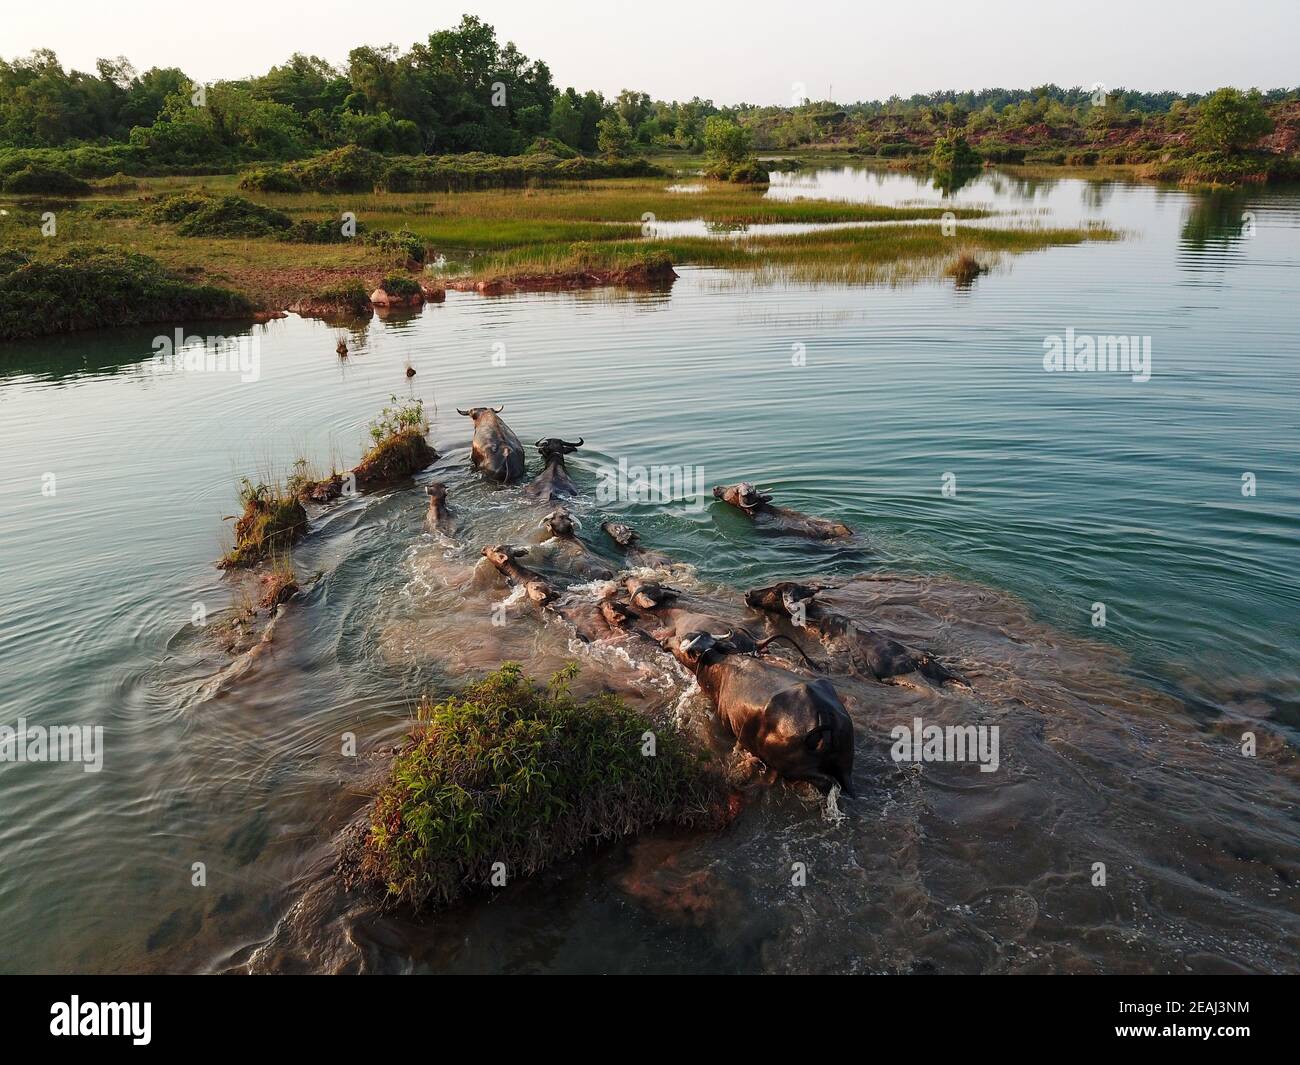 Búfalos nadan por el lago Foto de stock